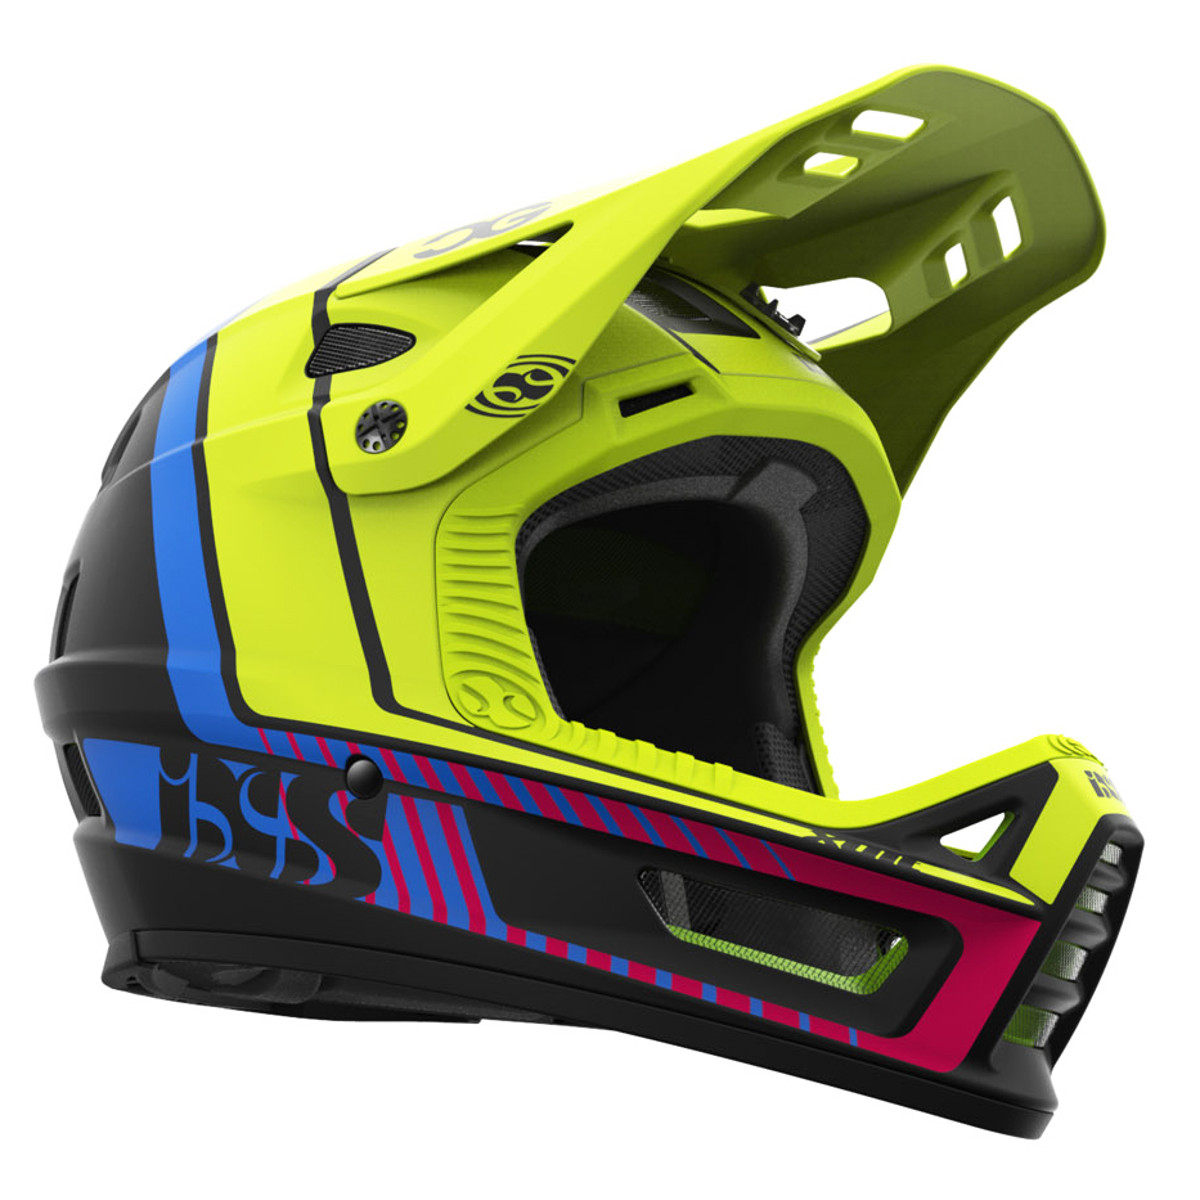 IXS Downhill MTB Helmet Xult Cedric Gracia CG Edition